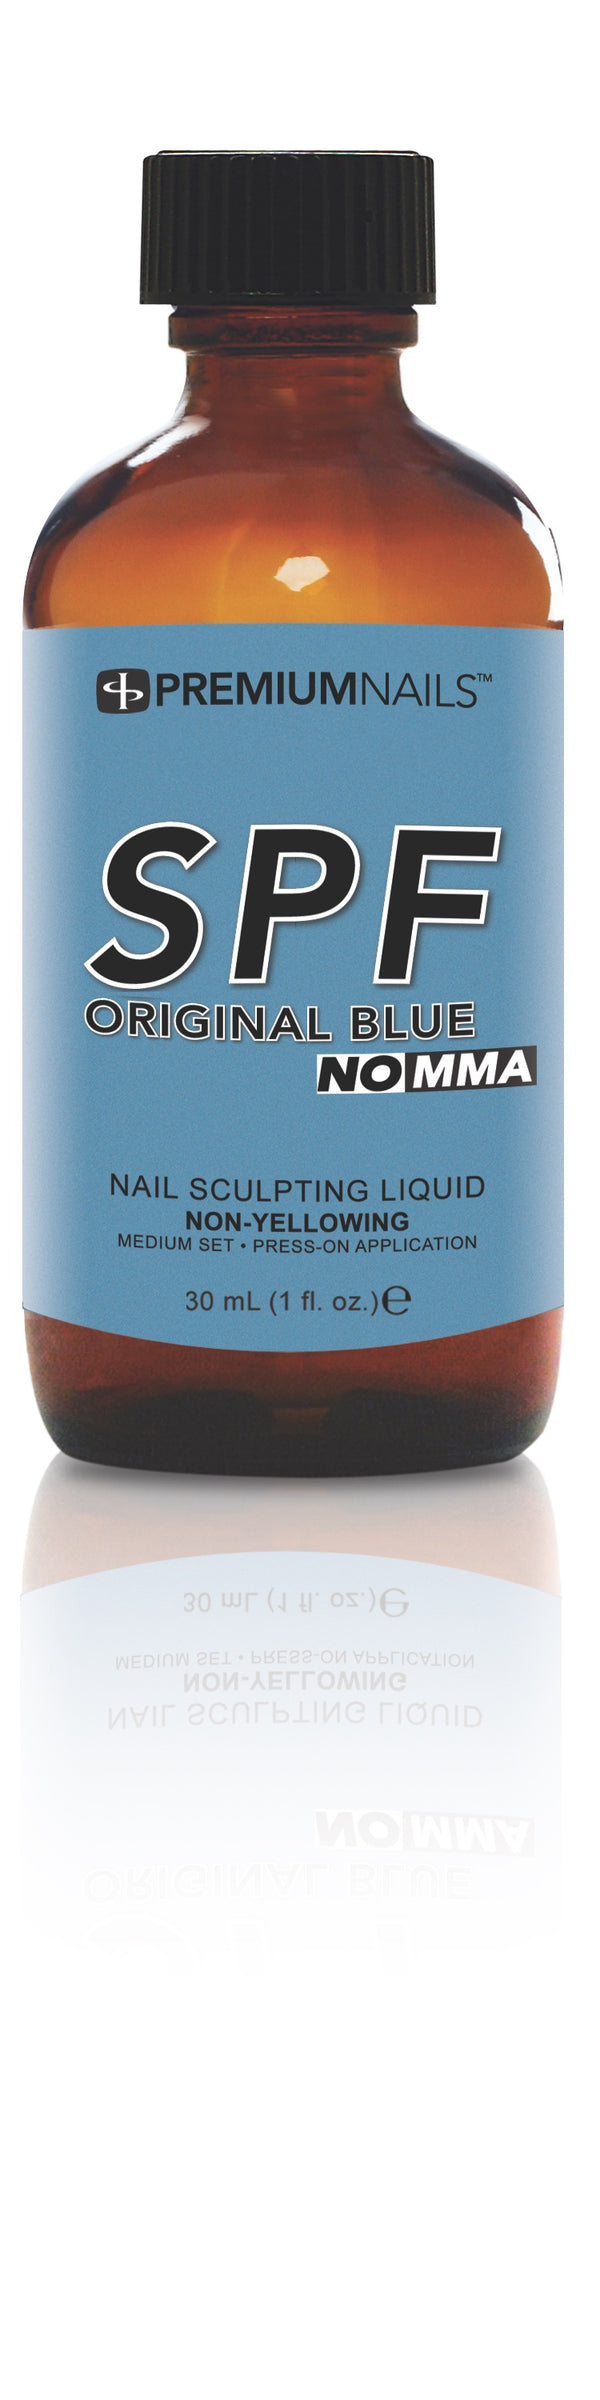 SPF Original Blue Nail Sculpting Liquid